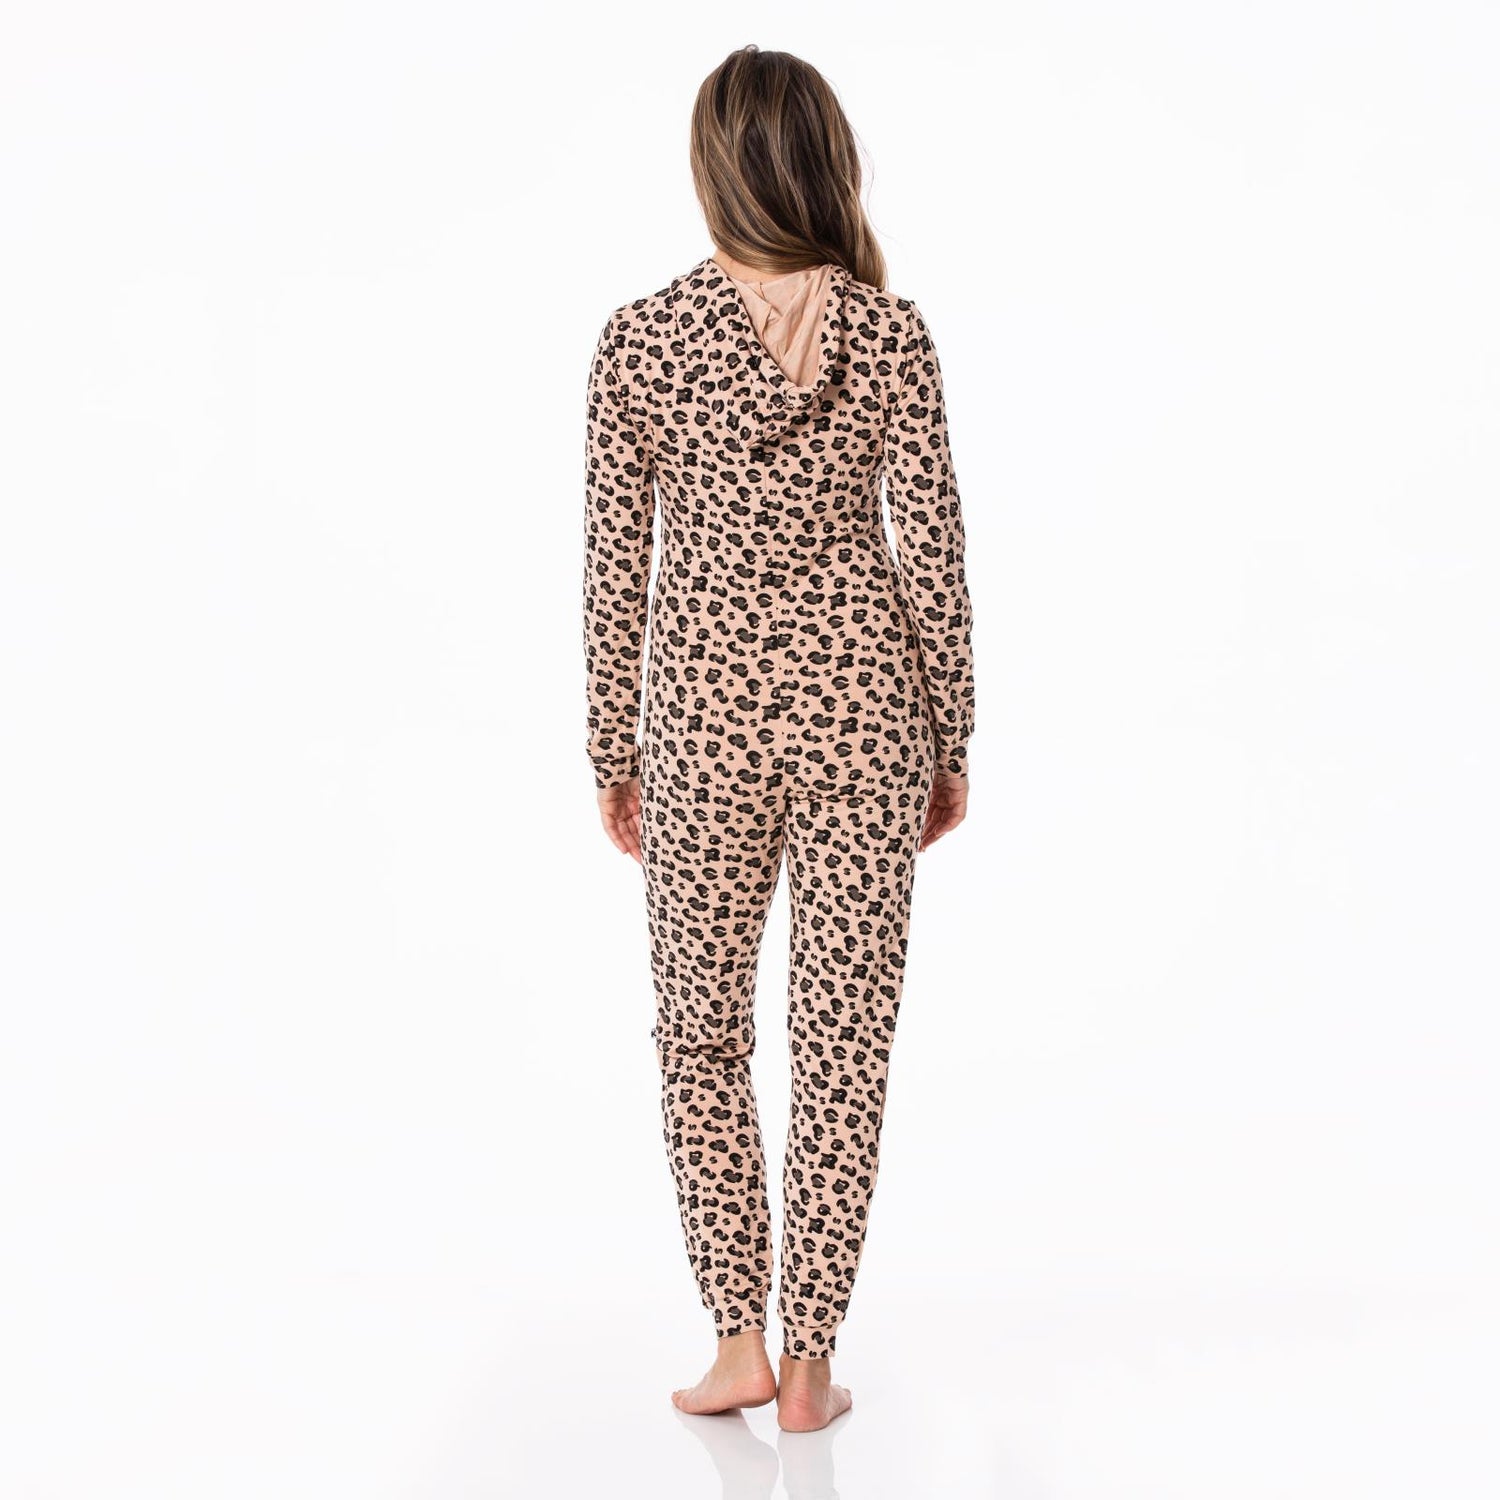 Women's Print Long Sleeve Jumpsuit with Hood in Suede Cheetah Print